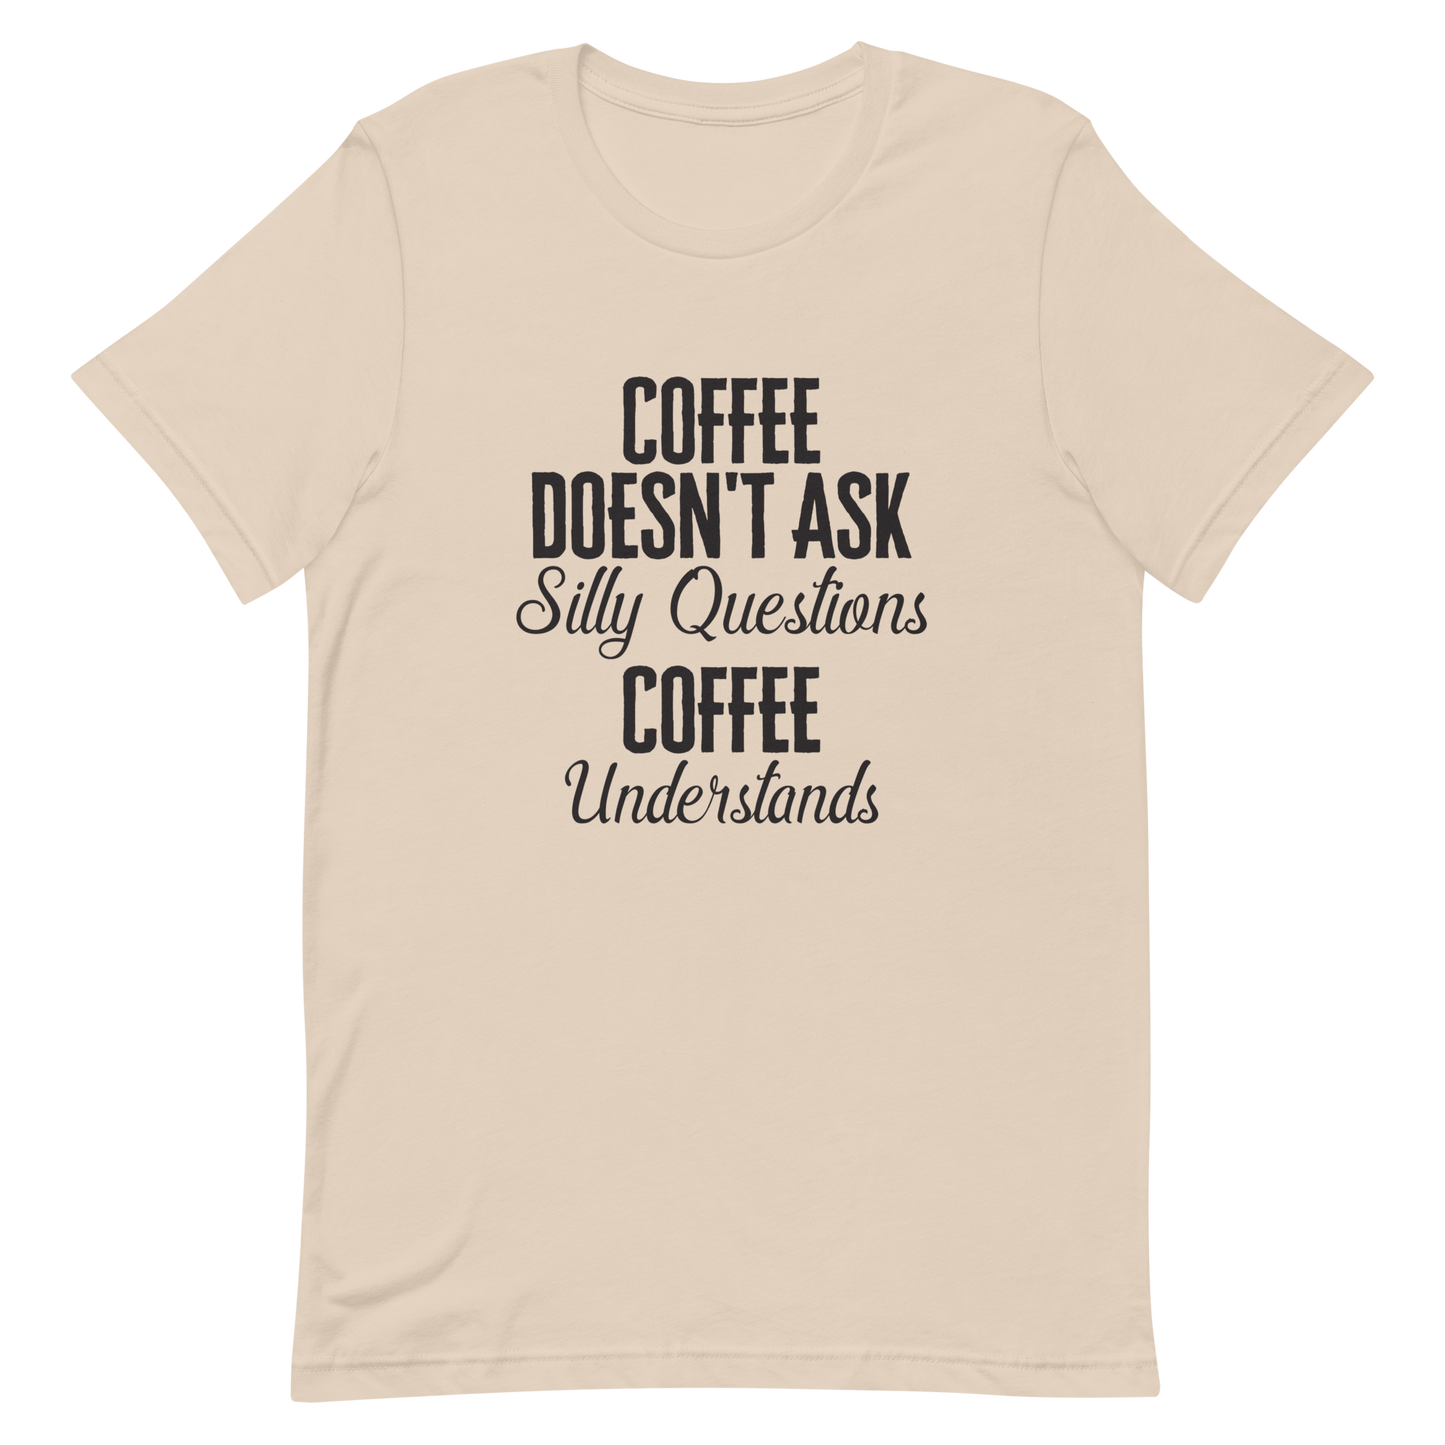 Coffee Understands T-Shirt